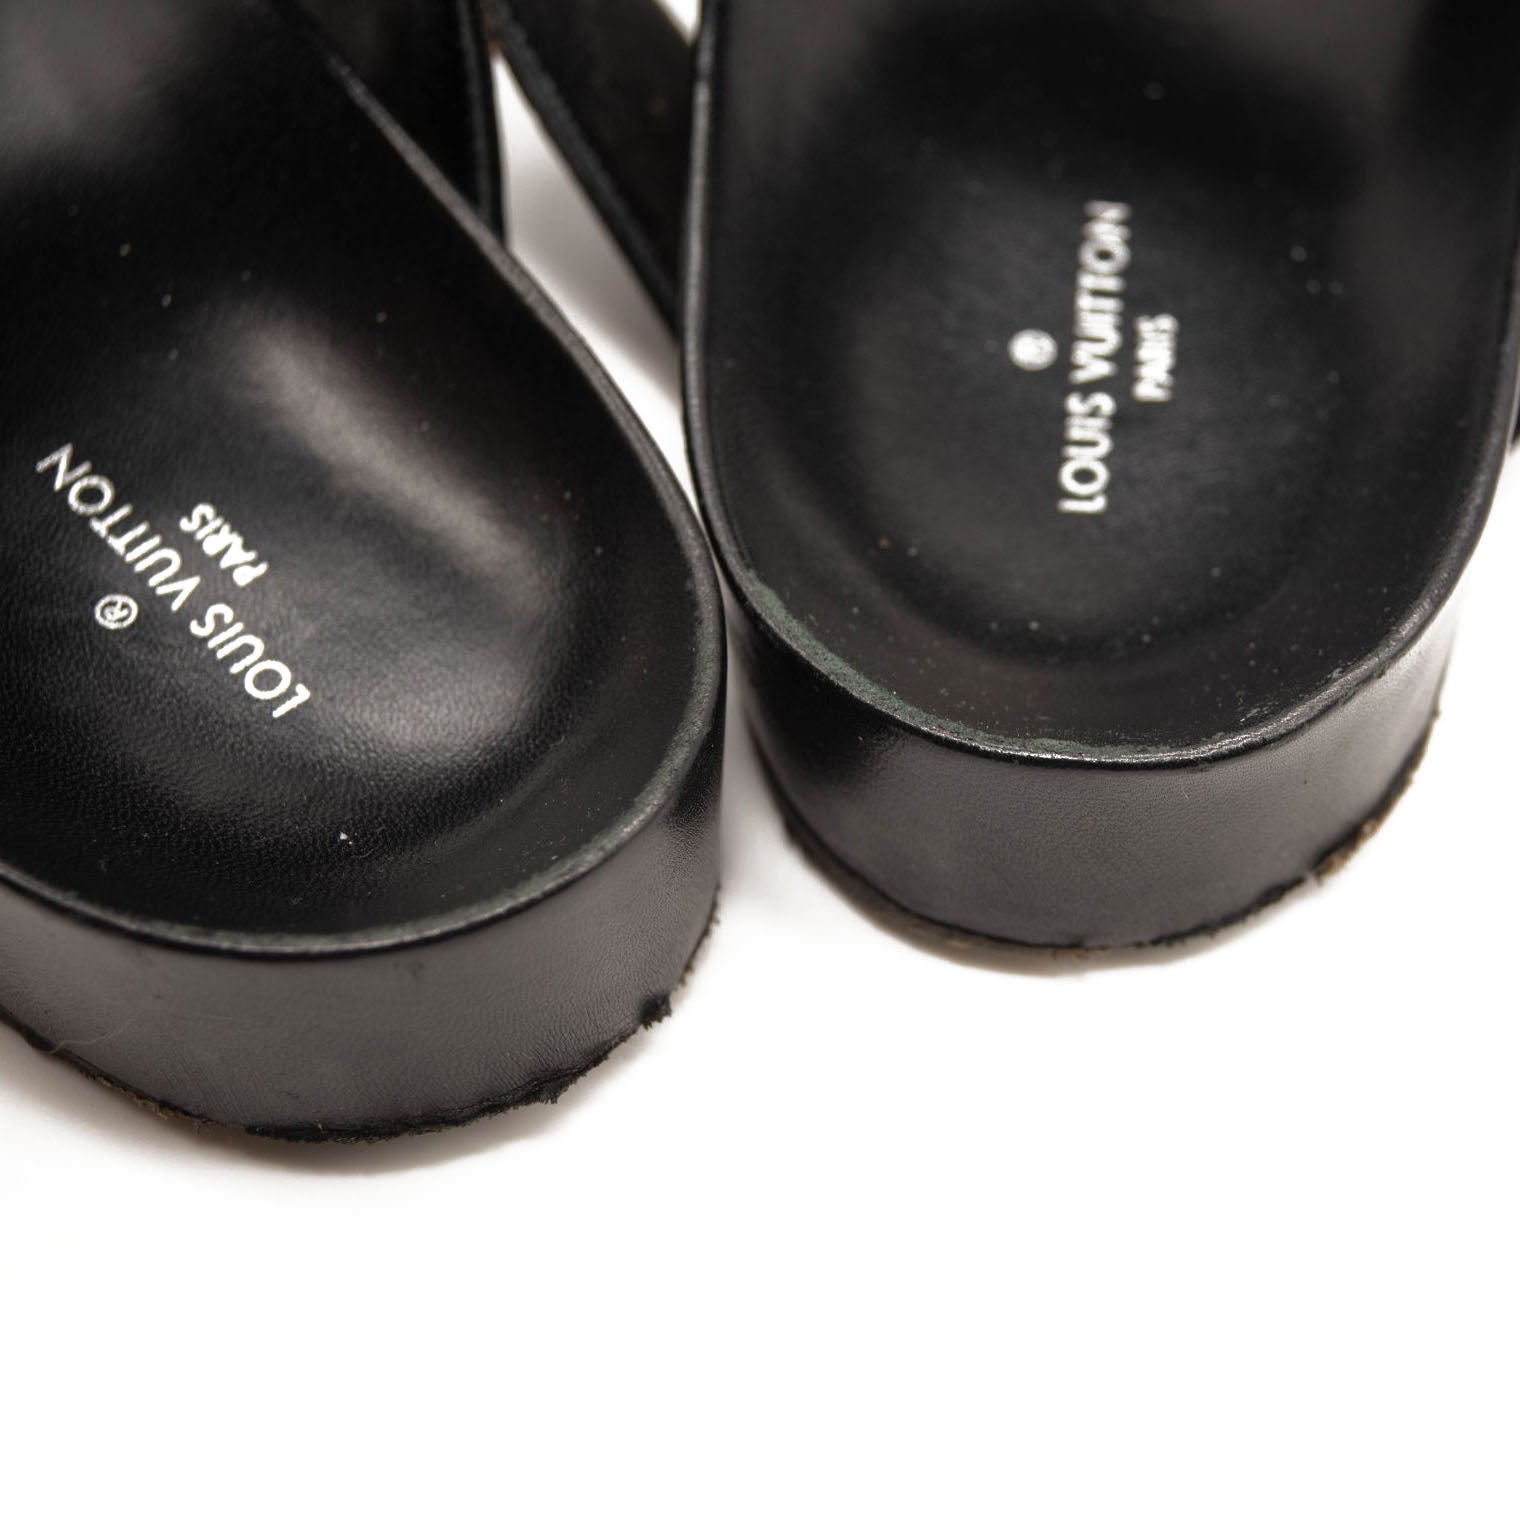 Louis Vuitton 2019 Bom Dia Mule Sandals - Sandals, Shoes